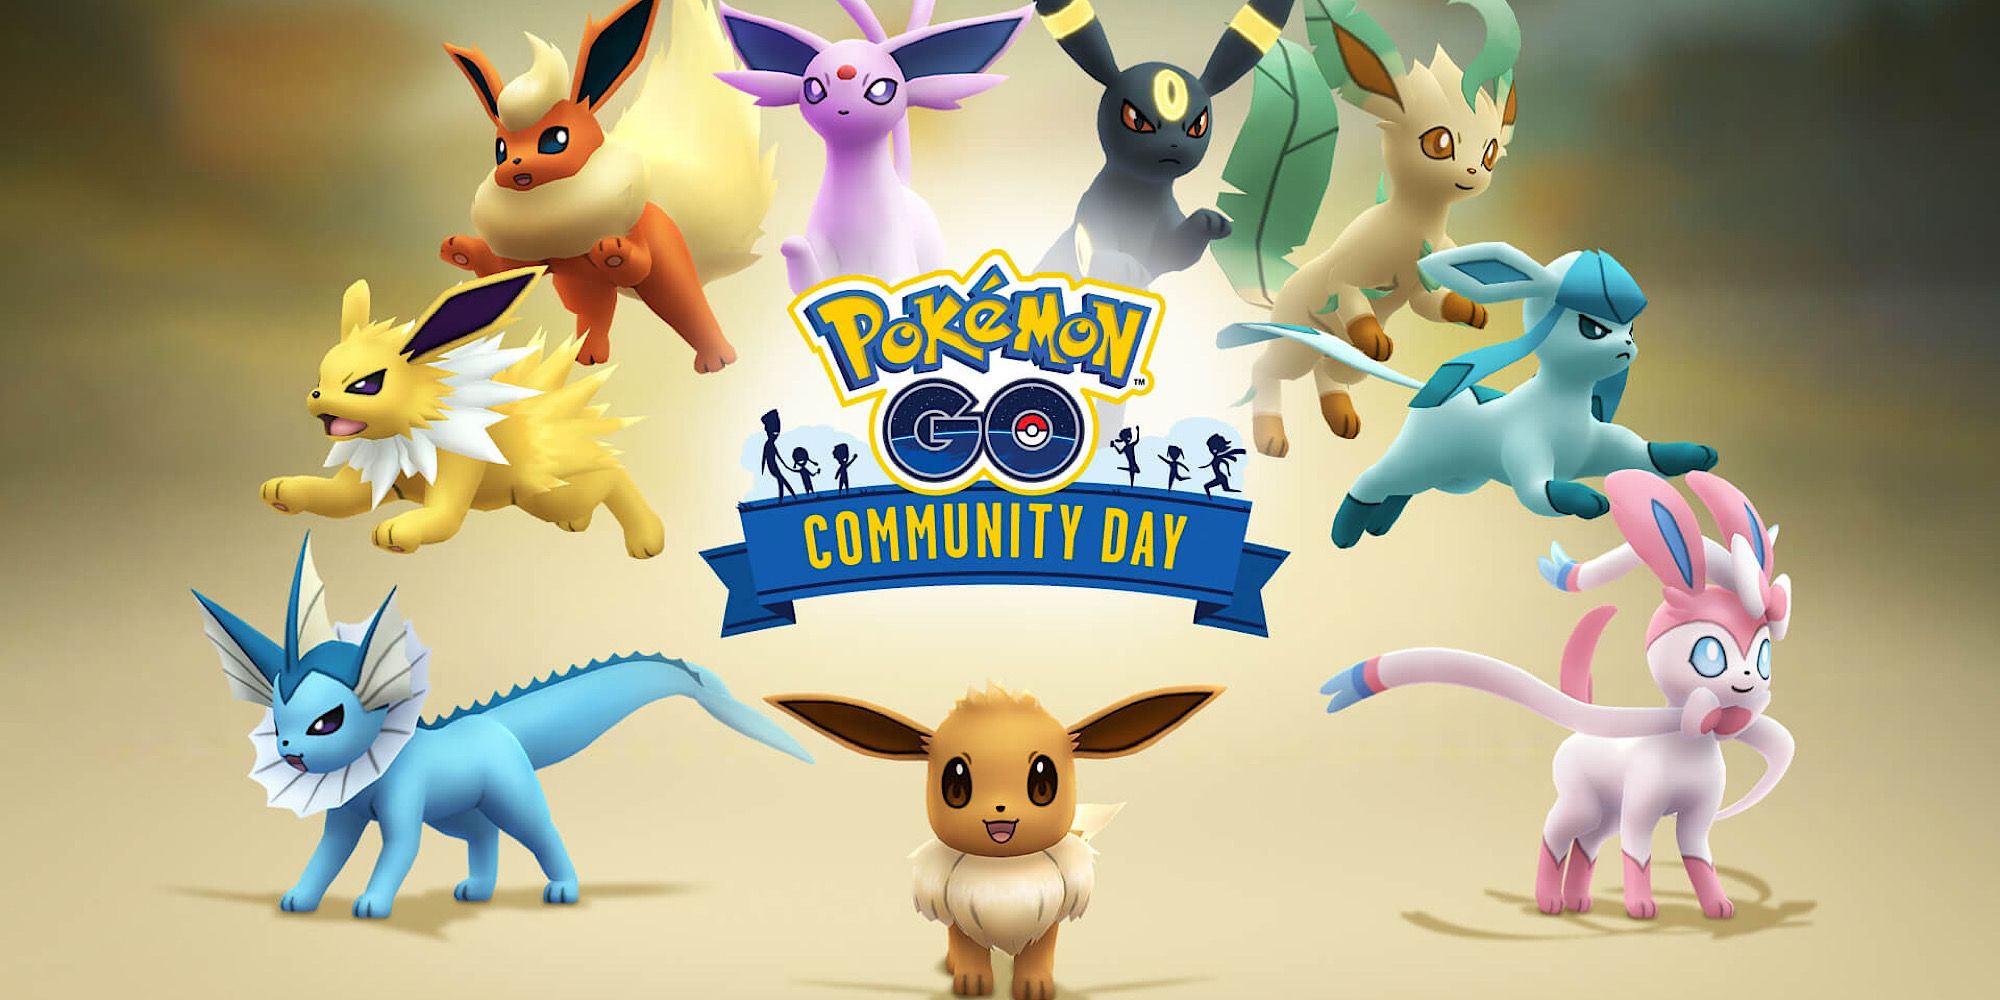 Pokemon GO Eeveelutions Eevee Community Day